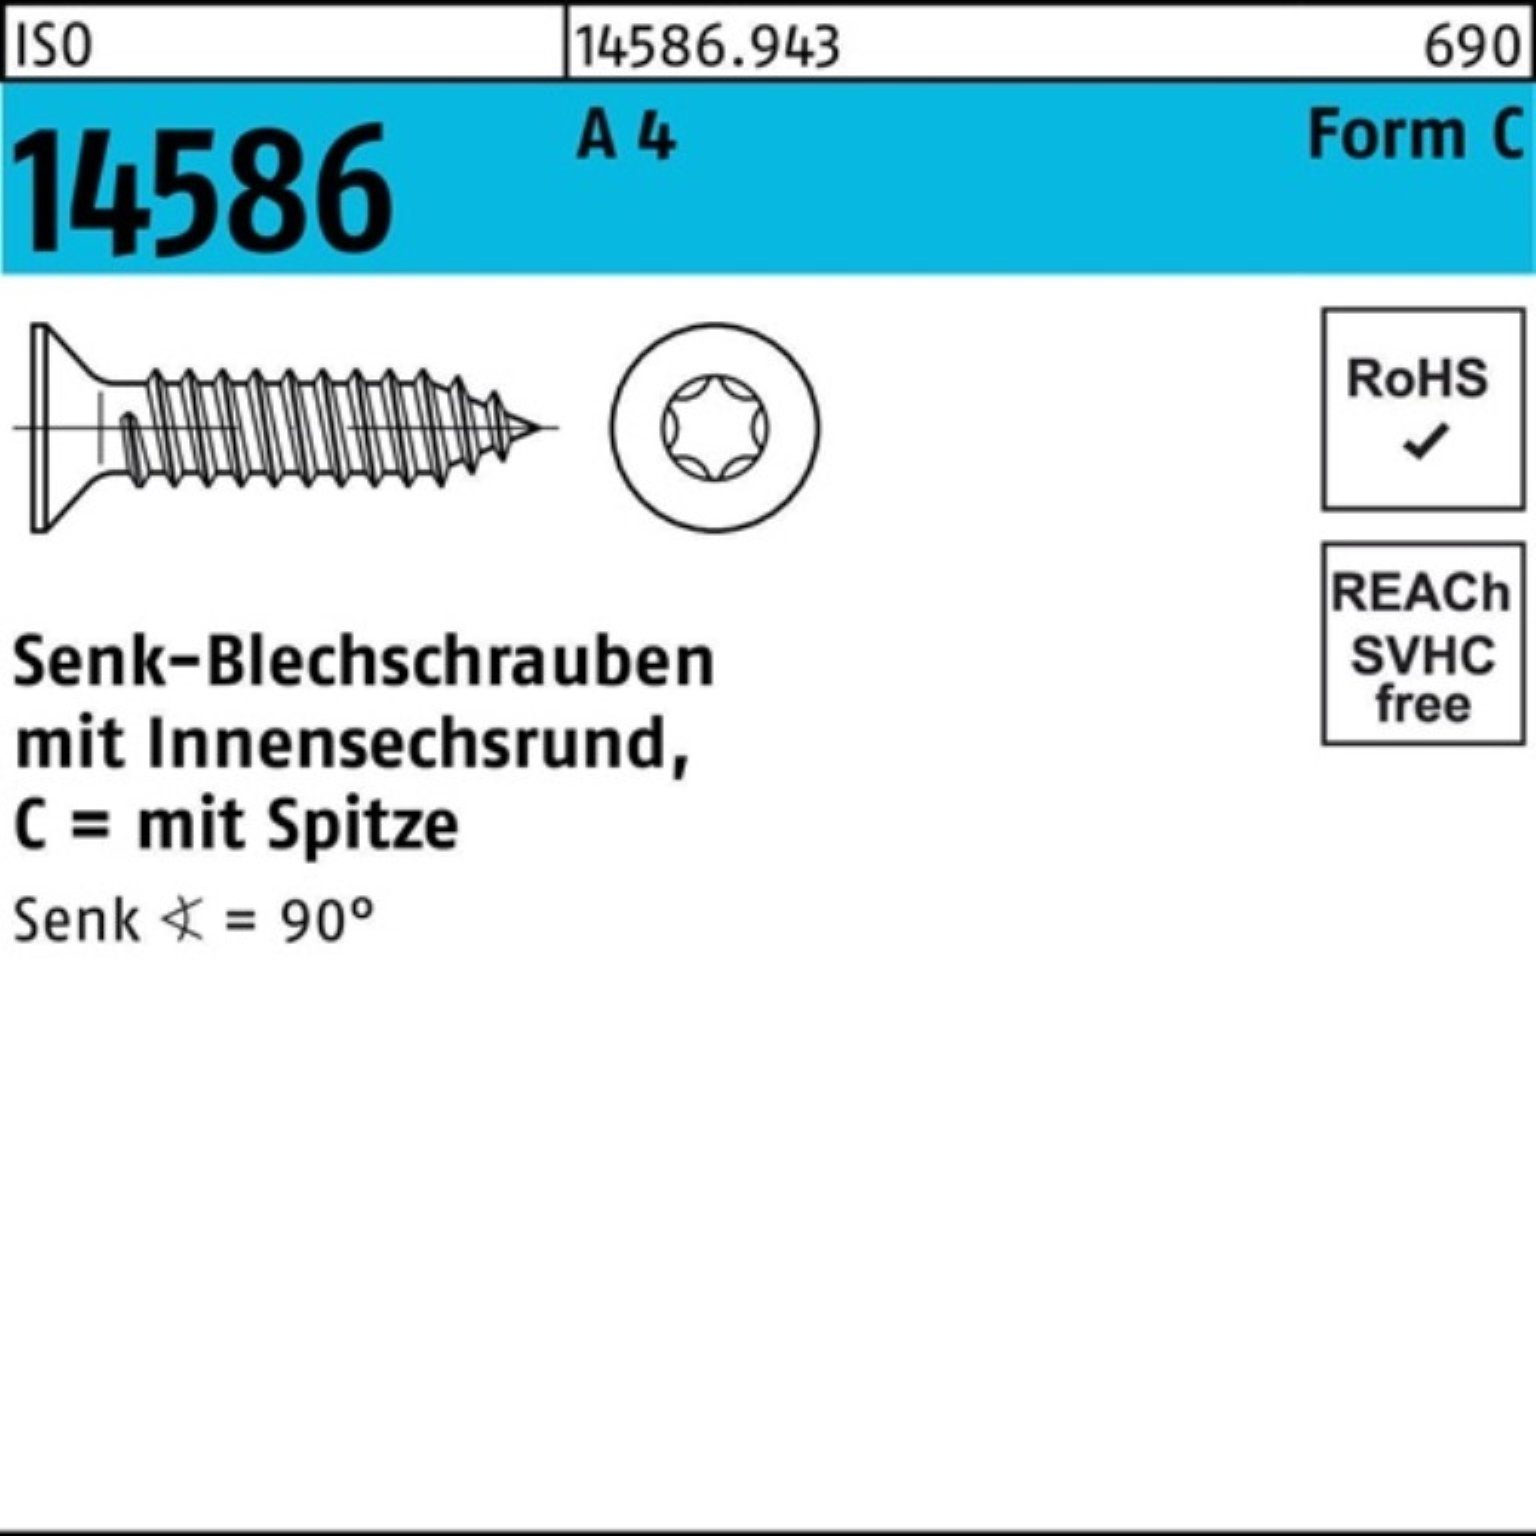 Reyher Schraube 1000er Pack Senkblechschraube ISO 14586 ISR/Spitze 3,9x 19-T15 A 4 100